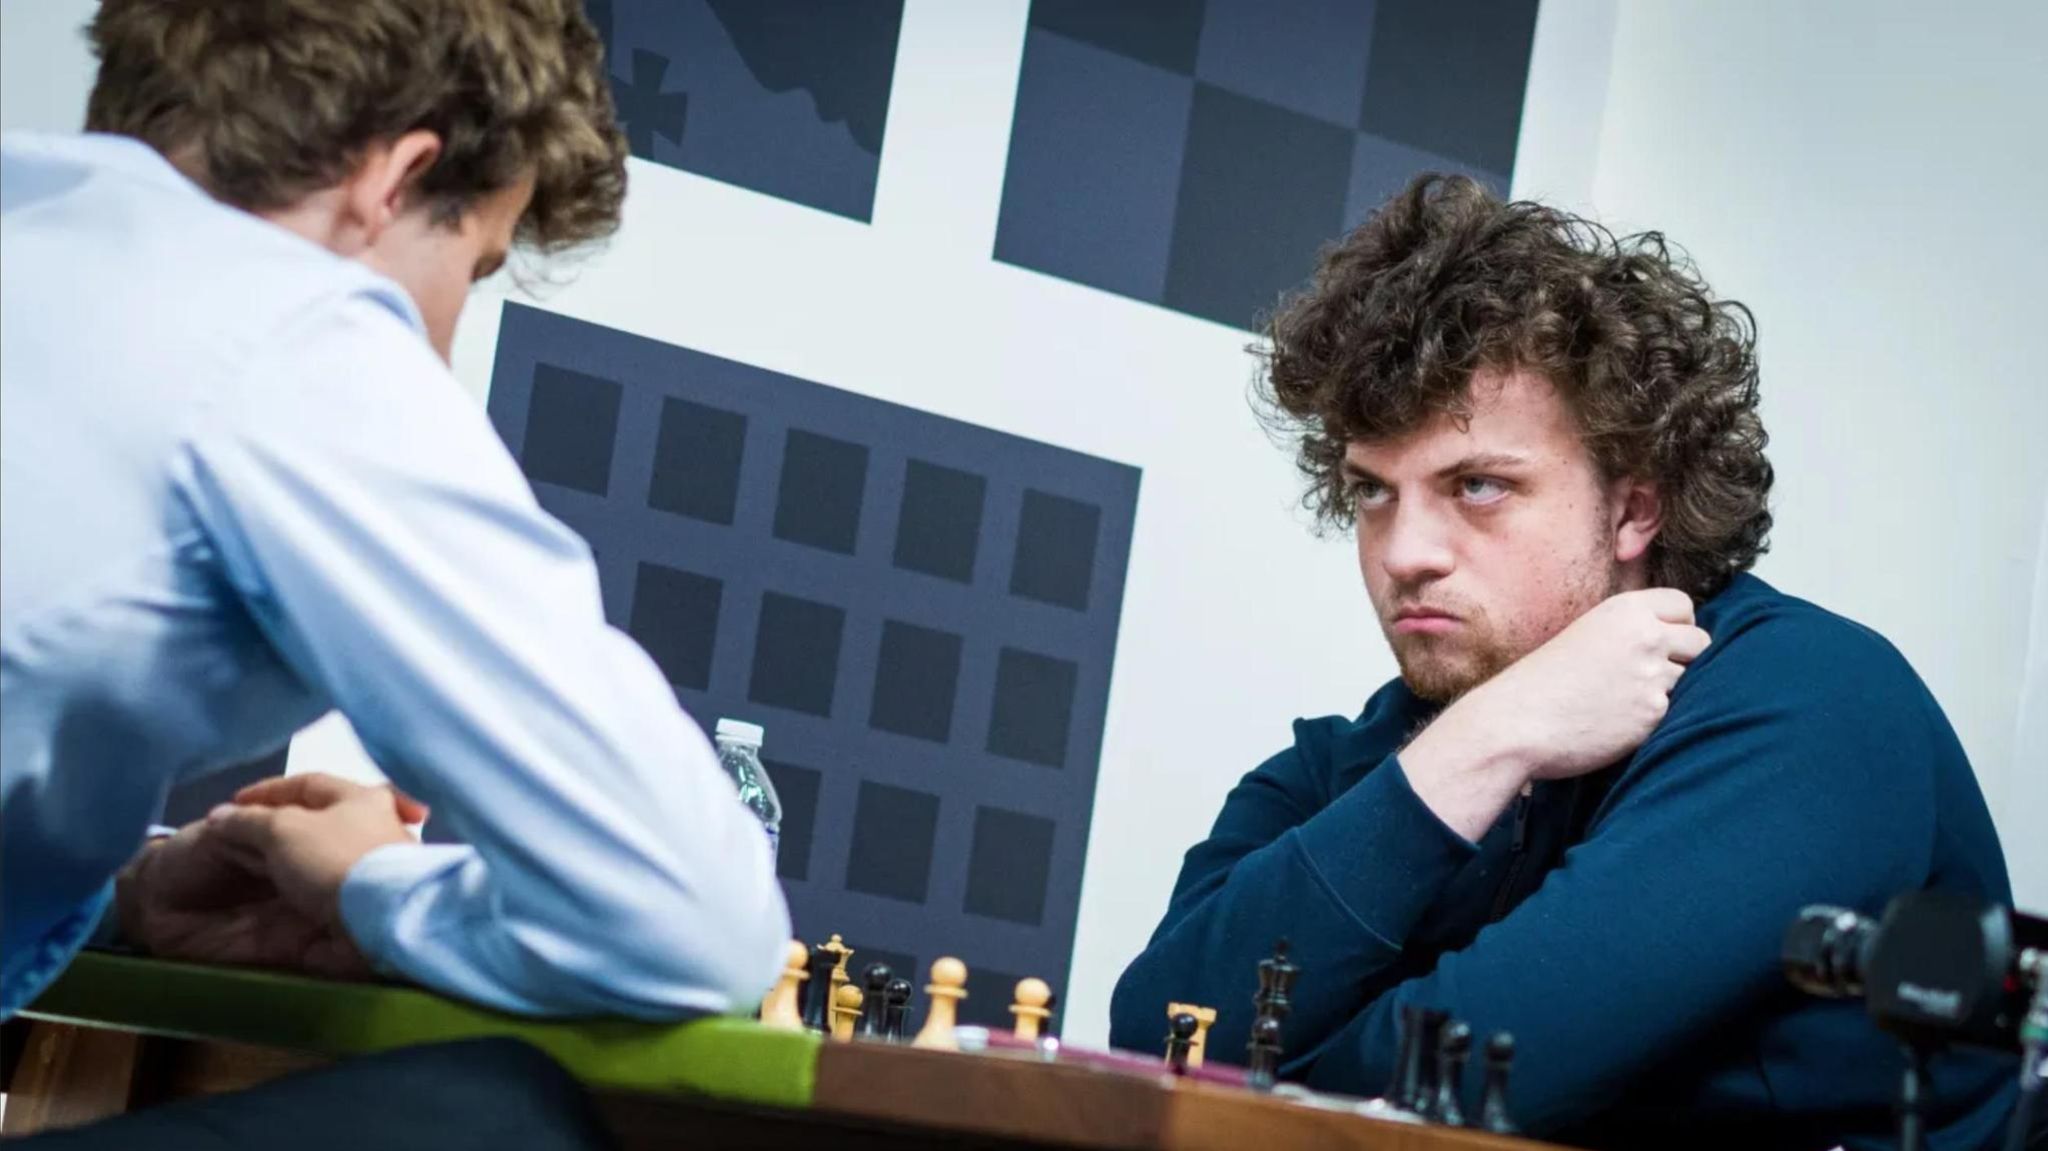 Männer als Problem im Schach: Das Spiel der Sexisten